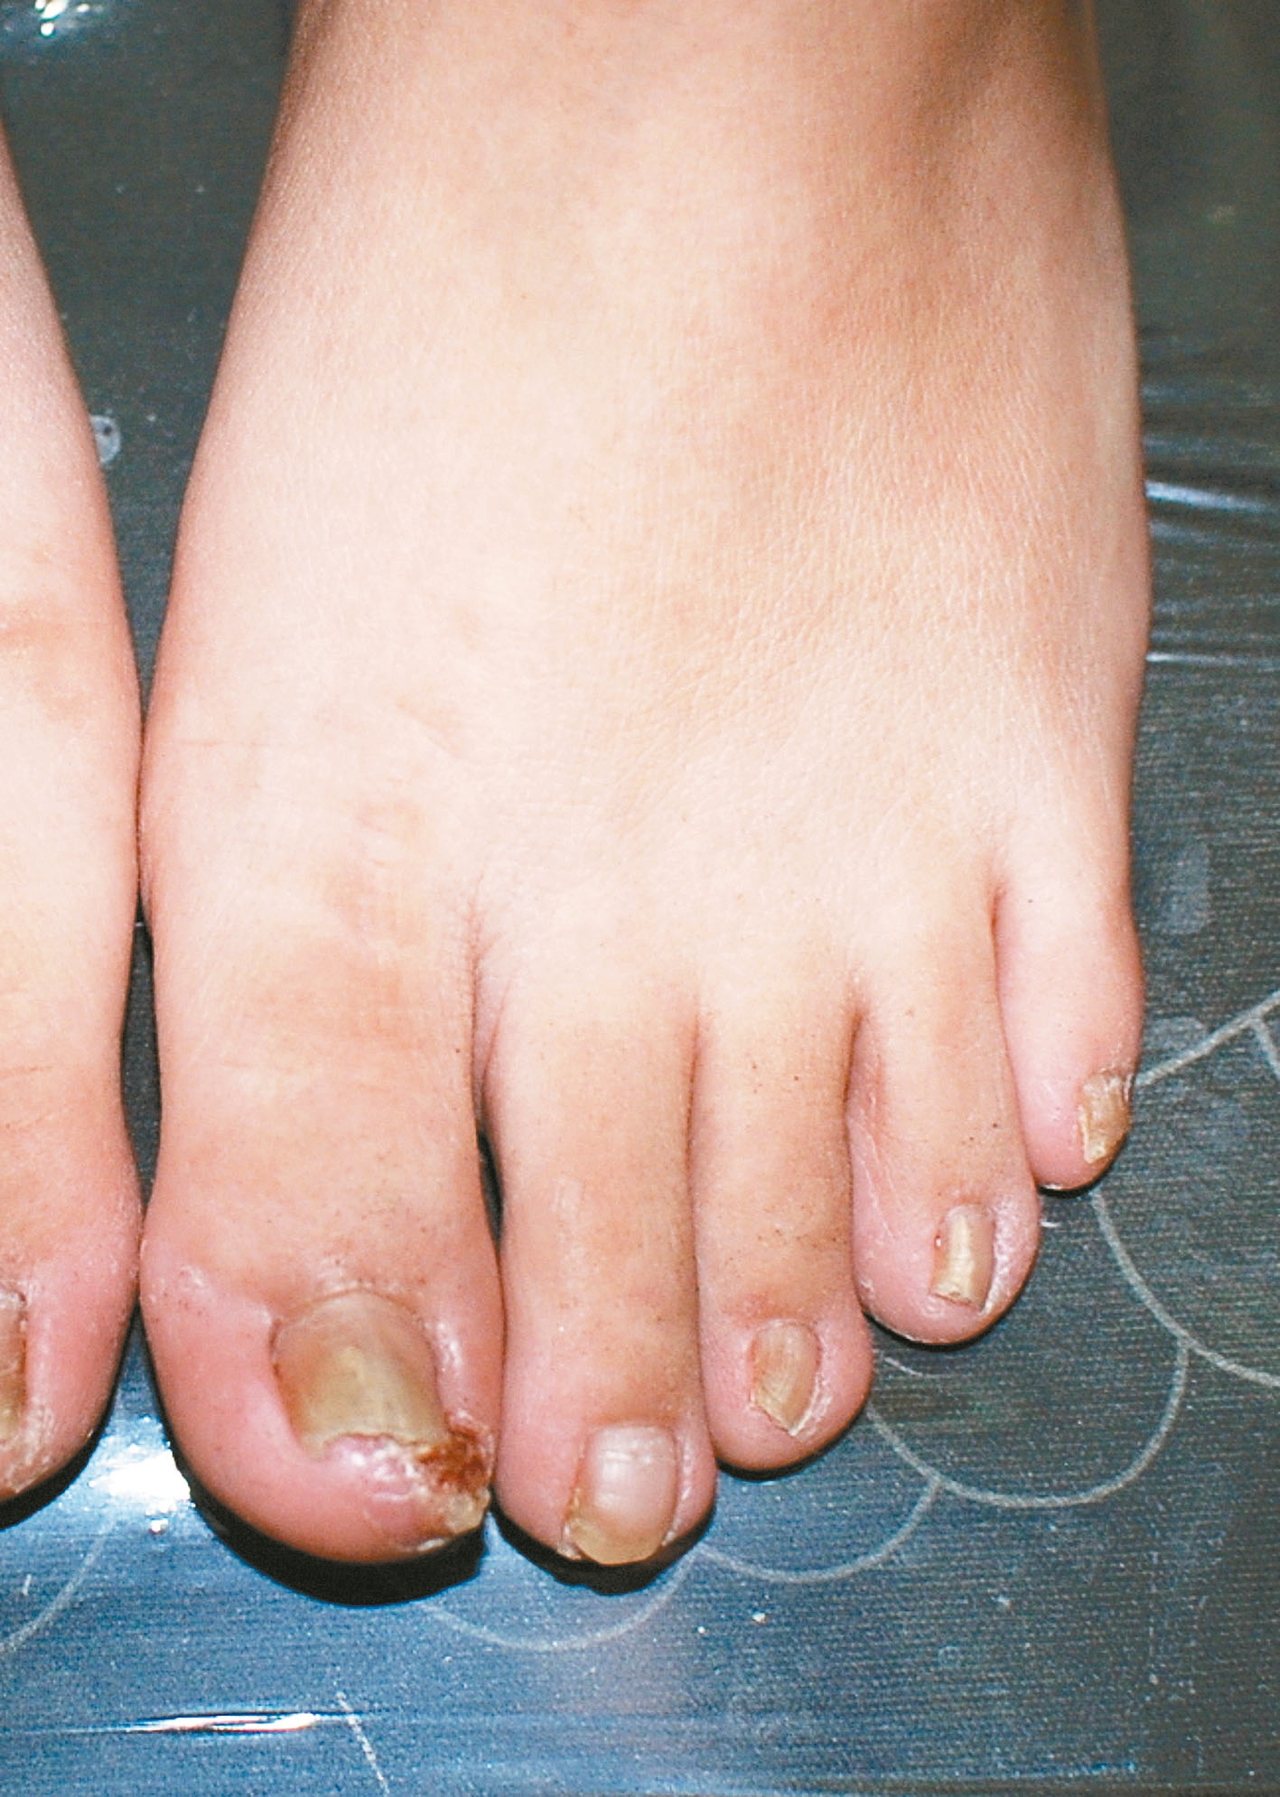 腳趾指因為灰指甲的關係有增厚變形的情況，也因為擠壓的關係，指甲往兩邊刺入周邊組織，而造成明顯的紅腫發炎感染及肉芽組織增生，這就是所謂的甲溝炎（圖）的表現。